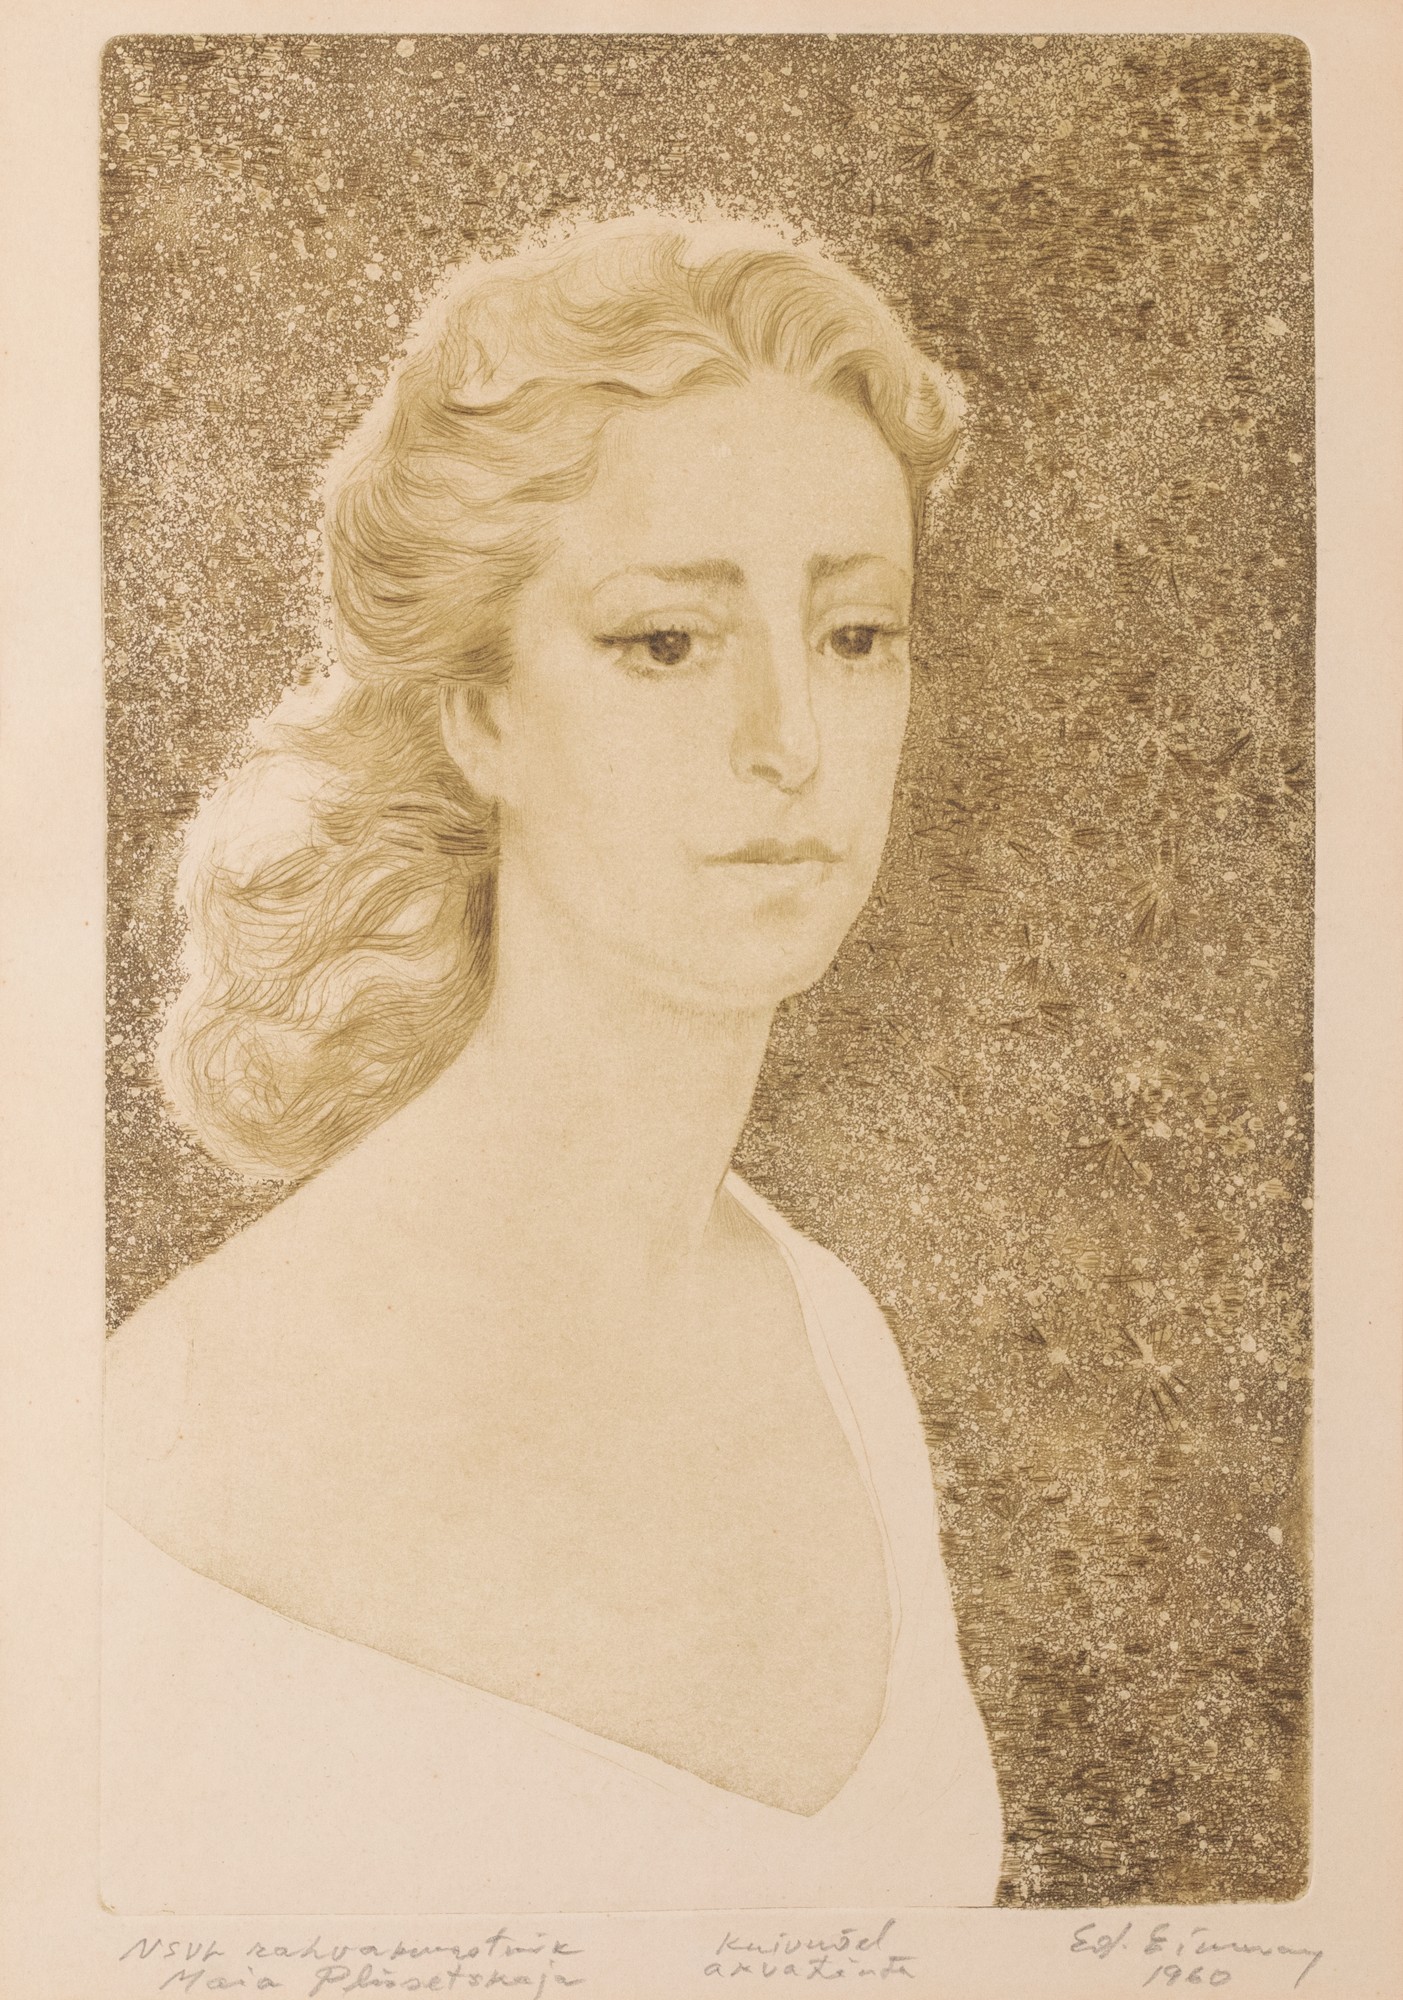 Eduard Einmann "Portrait of Maia Plissetskaja"